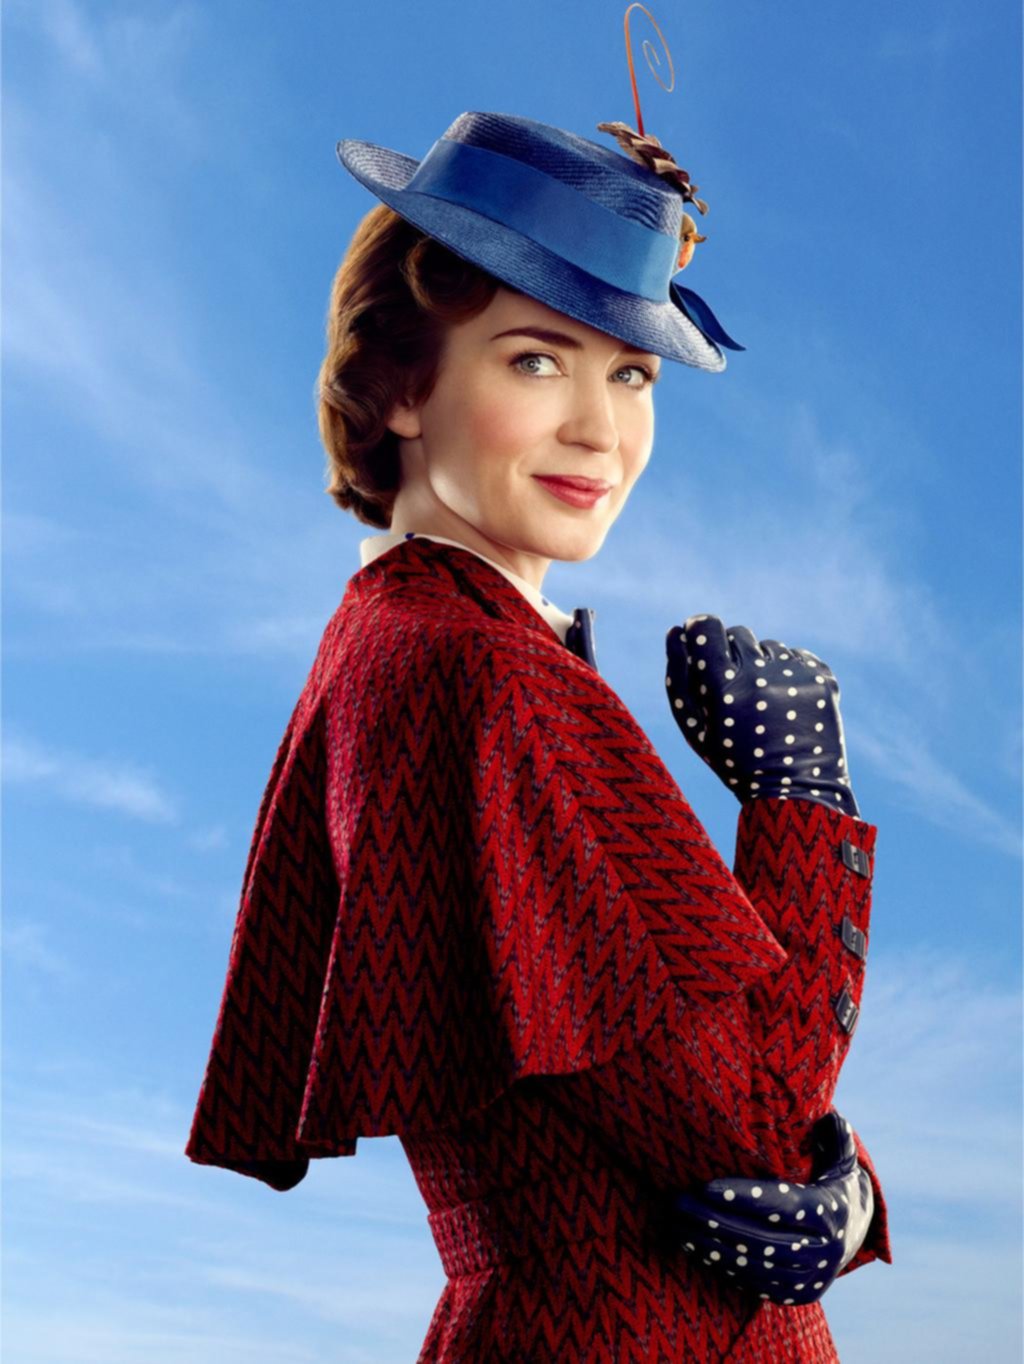 “El regreso de Mary Poppins”: una superheroína mágica y tierna